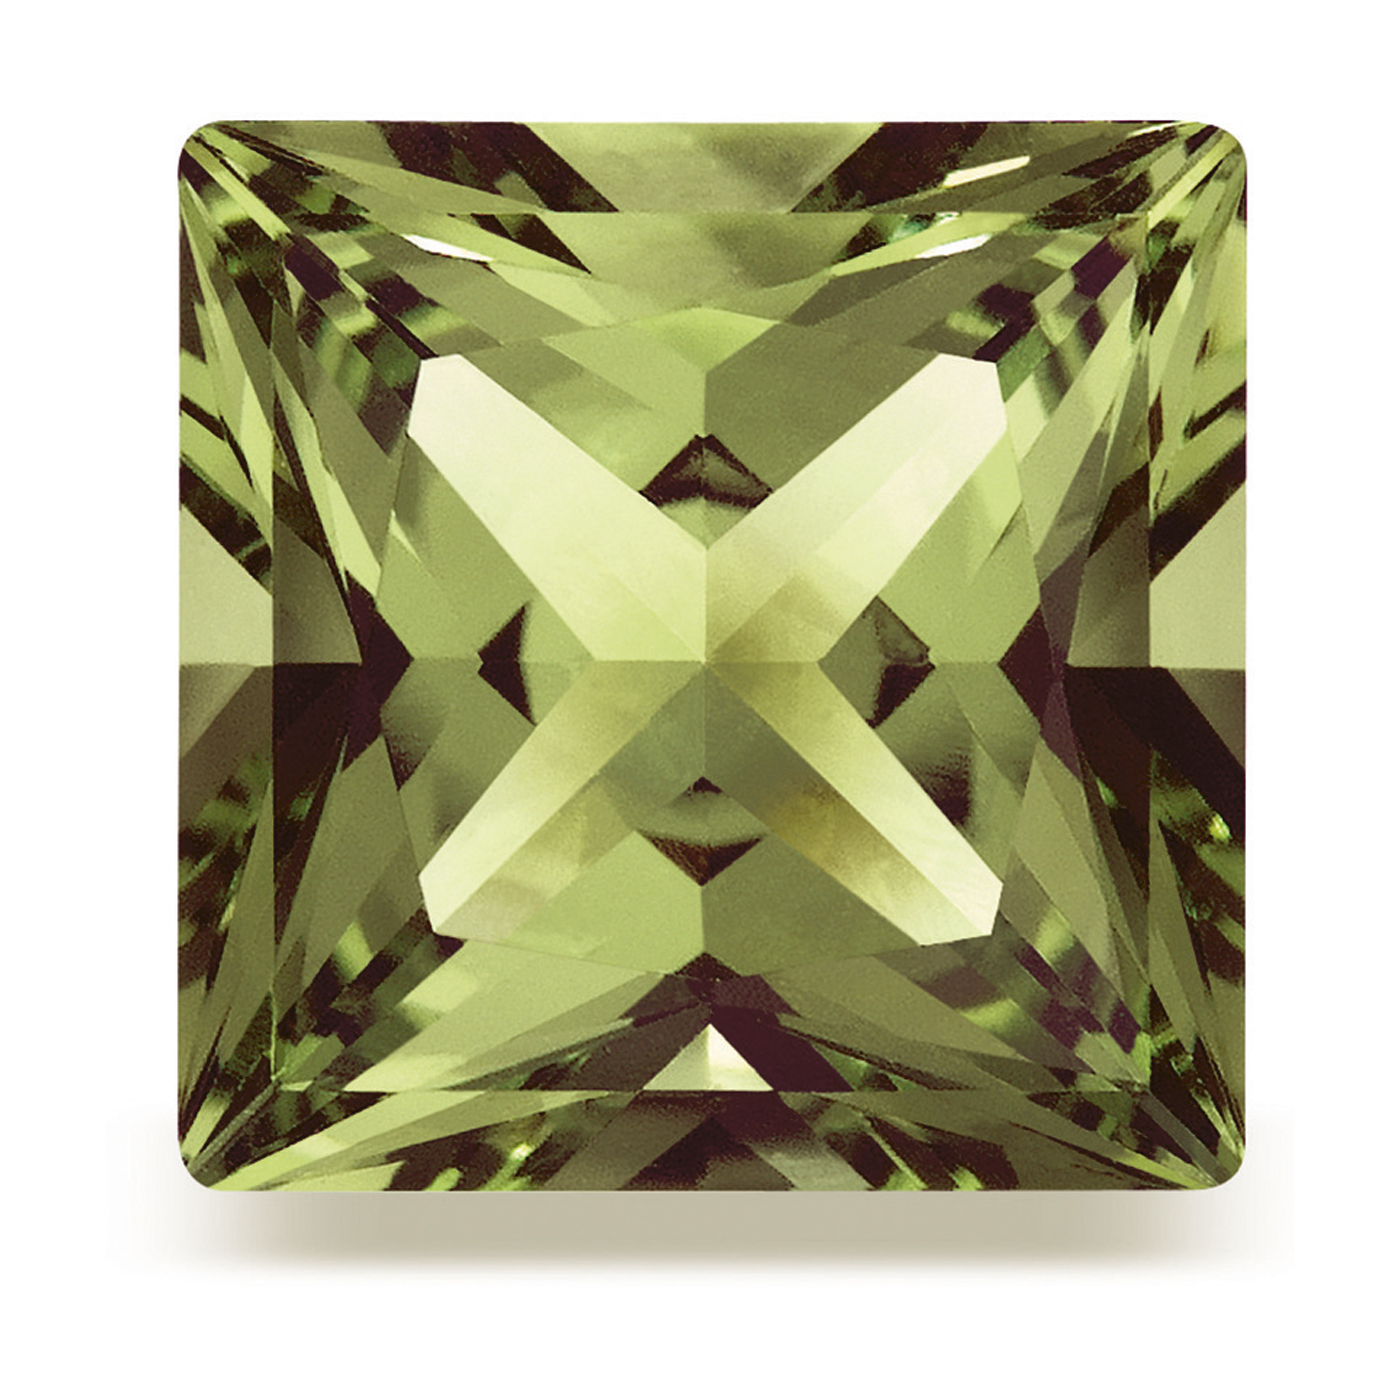 Alpinite, Olive Green, 3.0 x 3.0 mm, Princess Cut - 1 piece